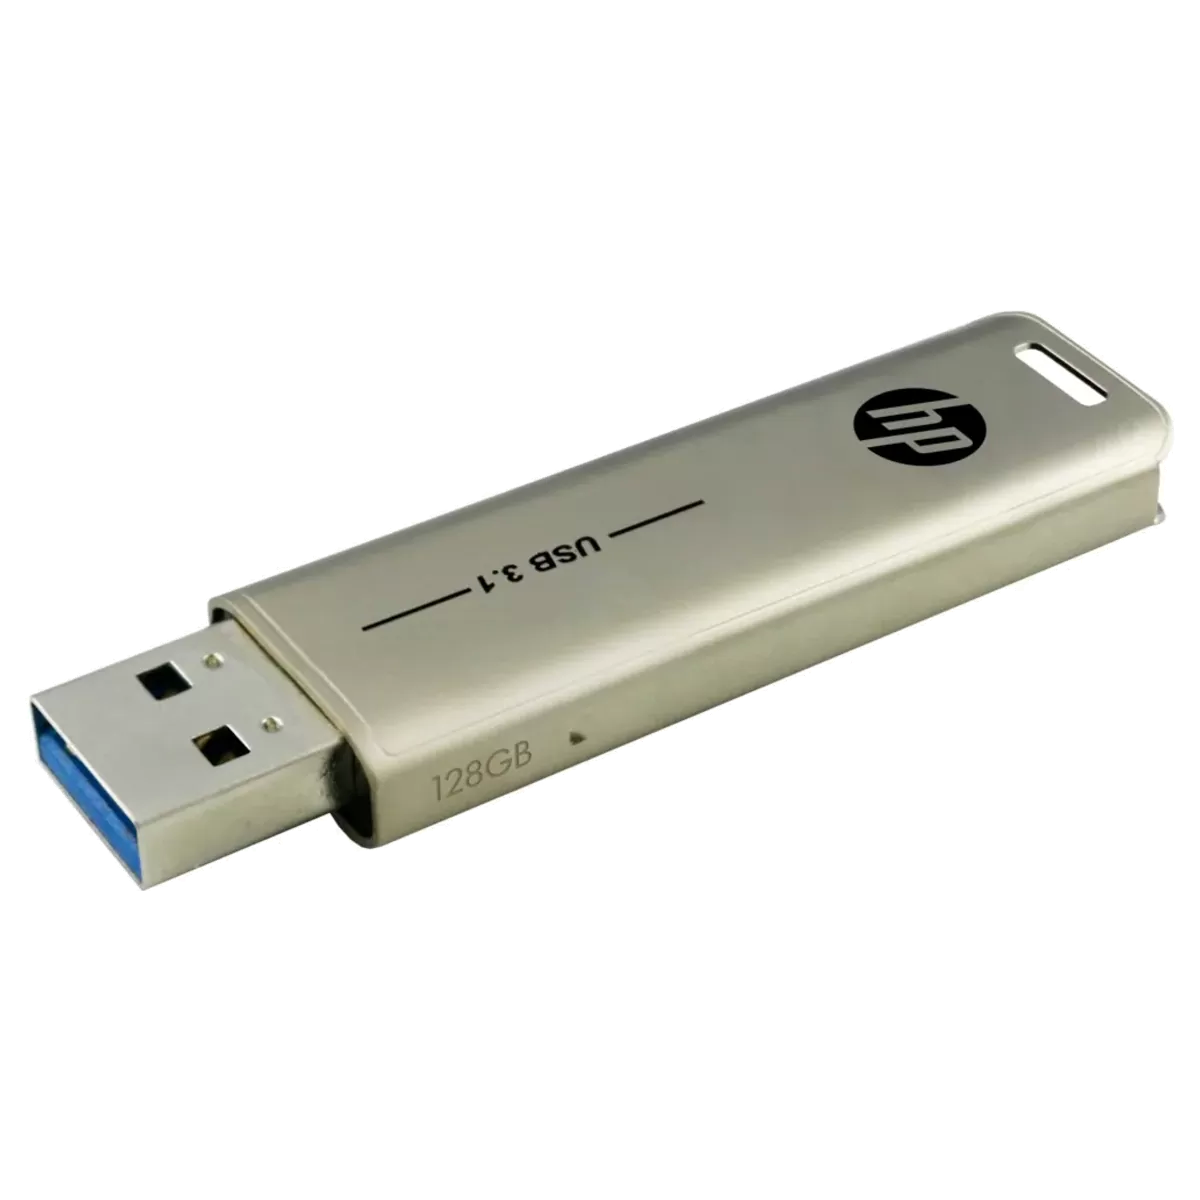 HP x796W 128GB USB Storage